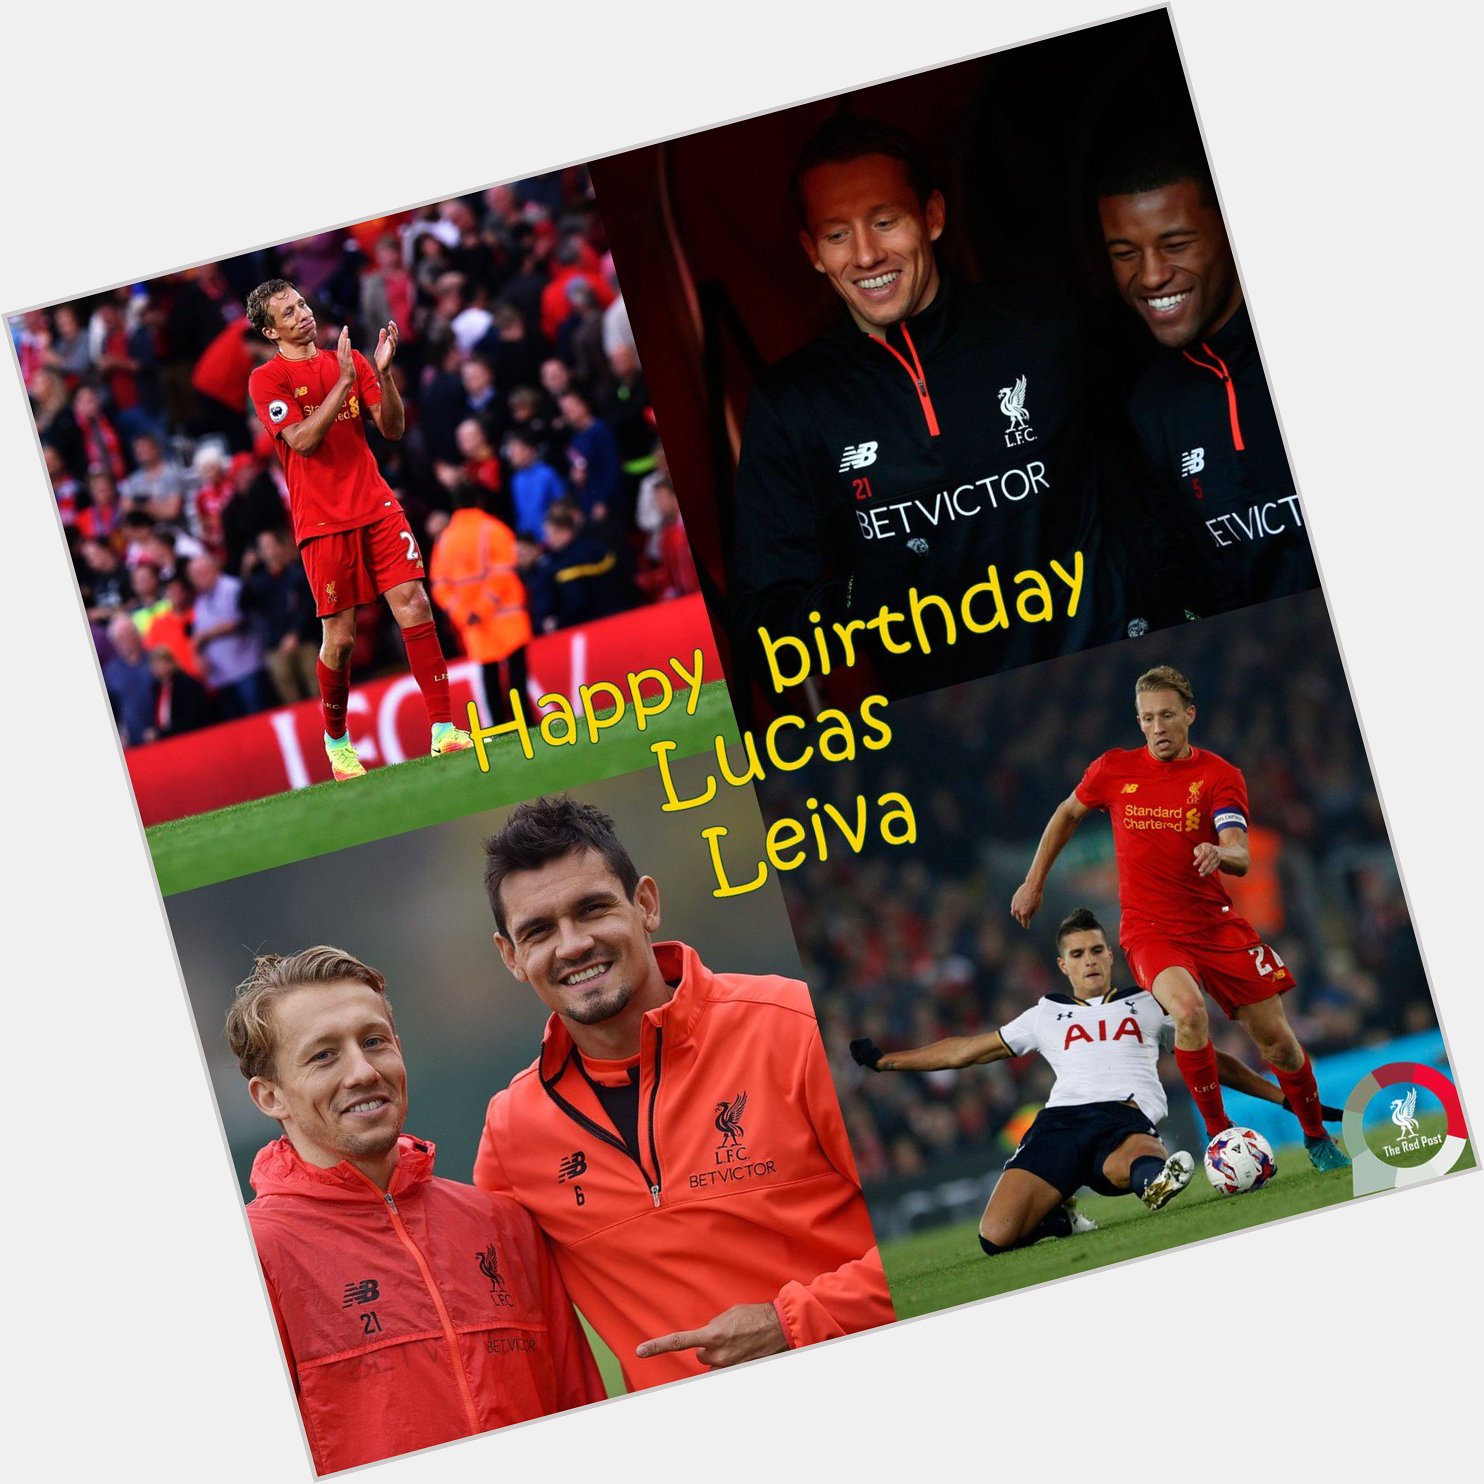 Happy birthday, Lucas Leiva   